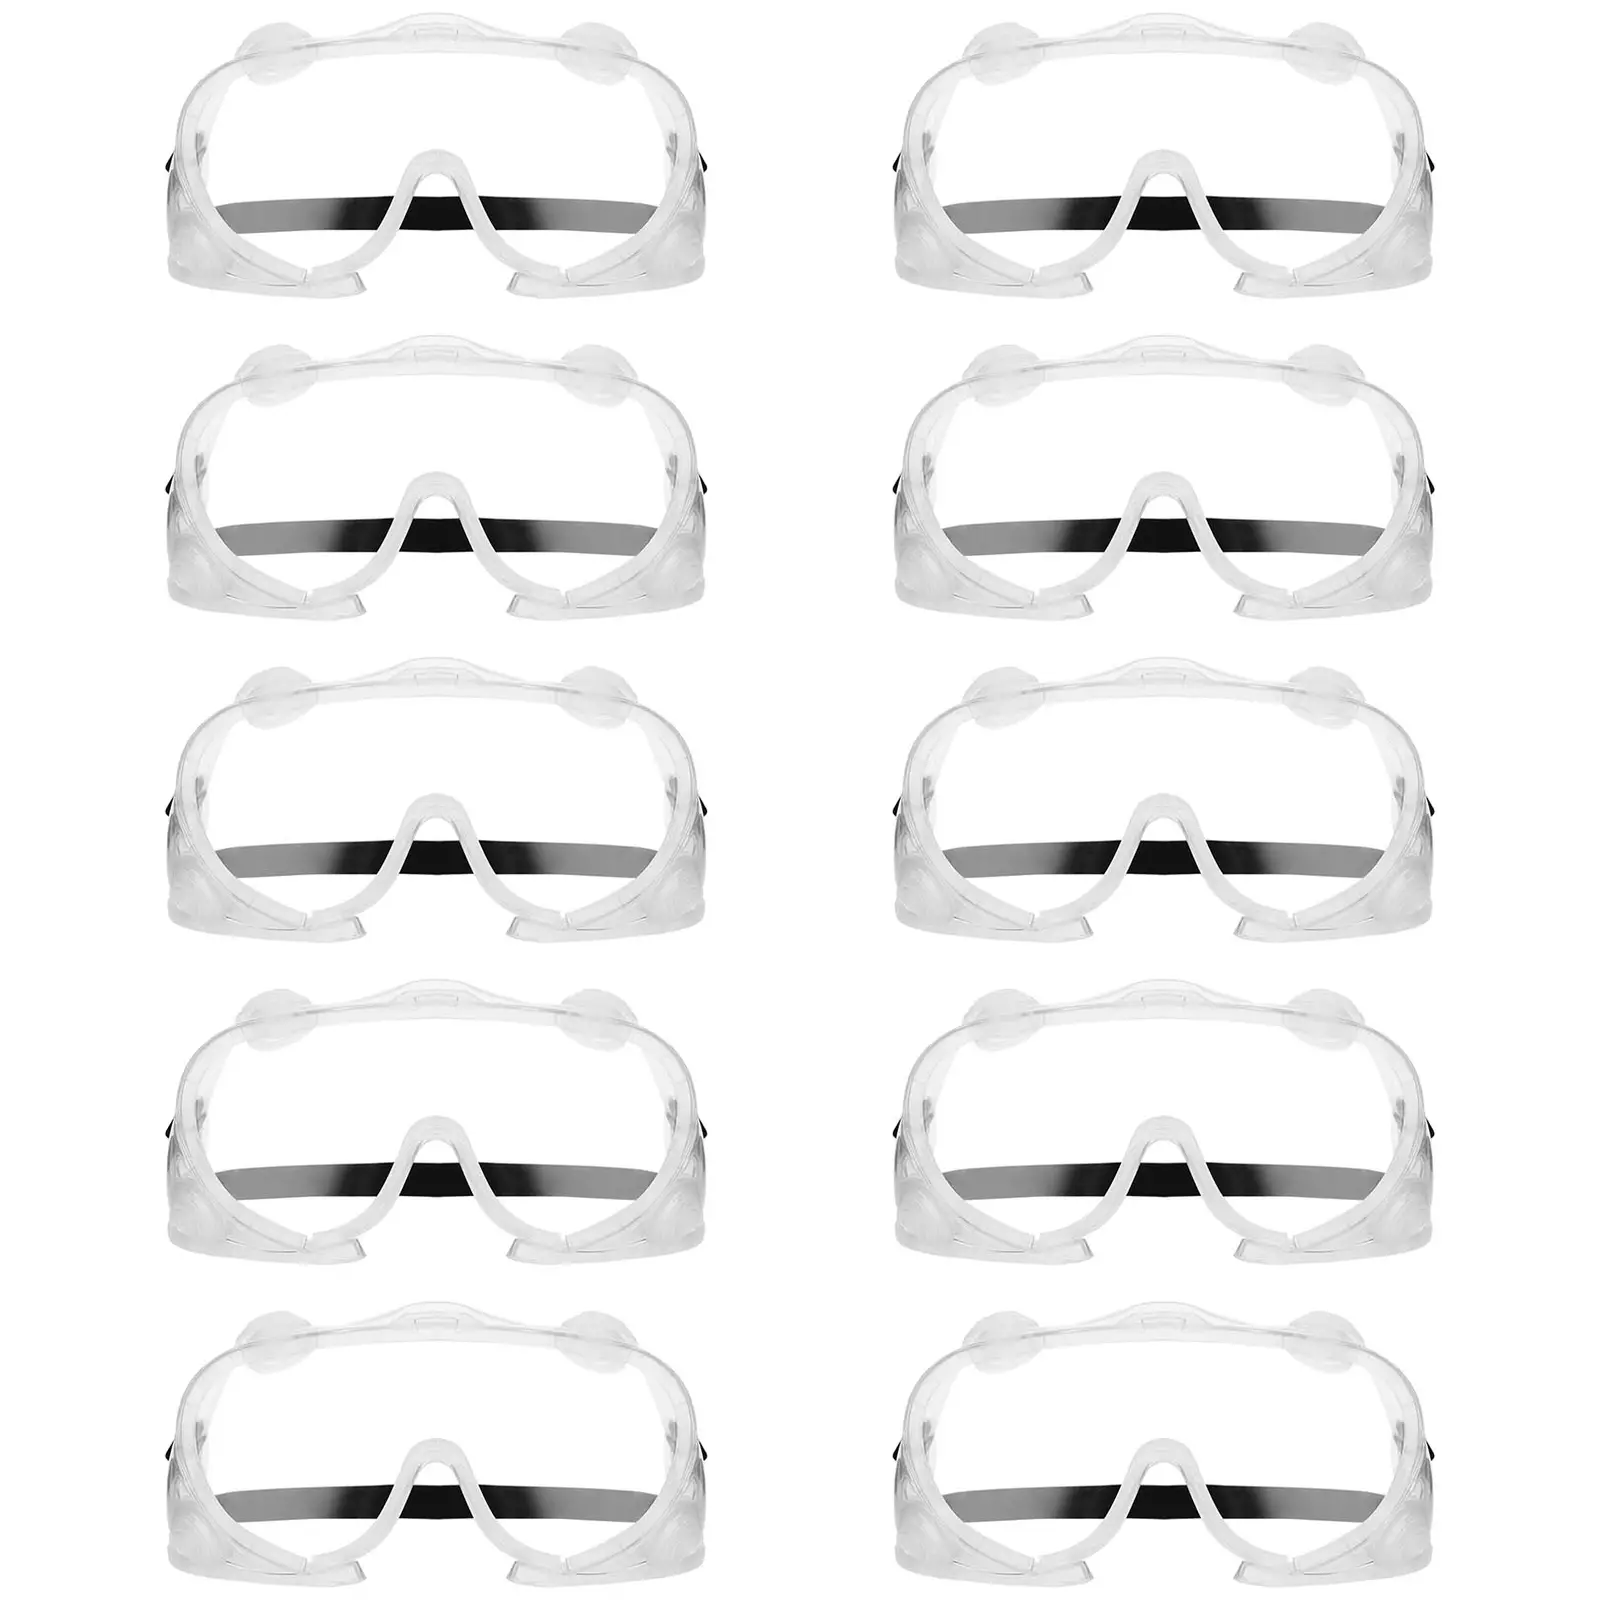 Occhiali protettivi - Set da 10 - Trasparenti - Taglia unica